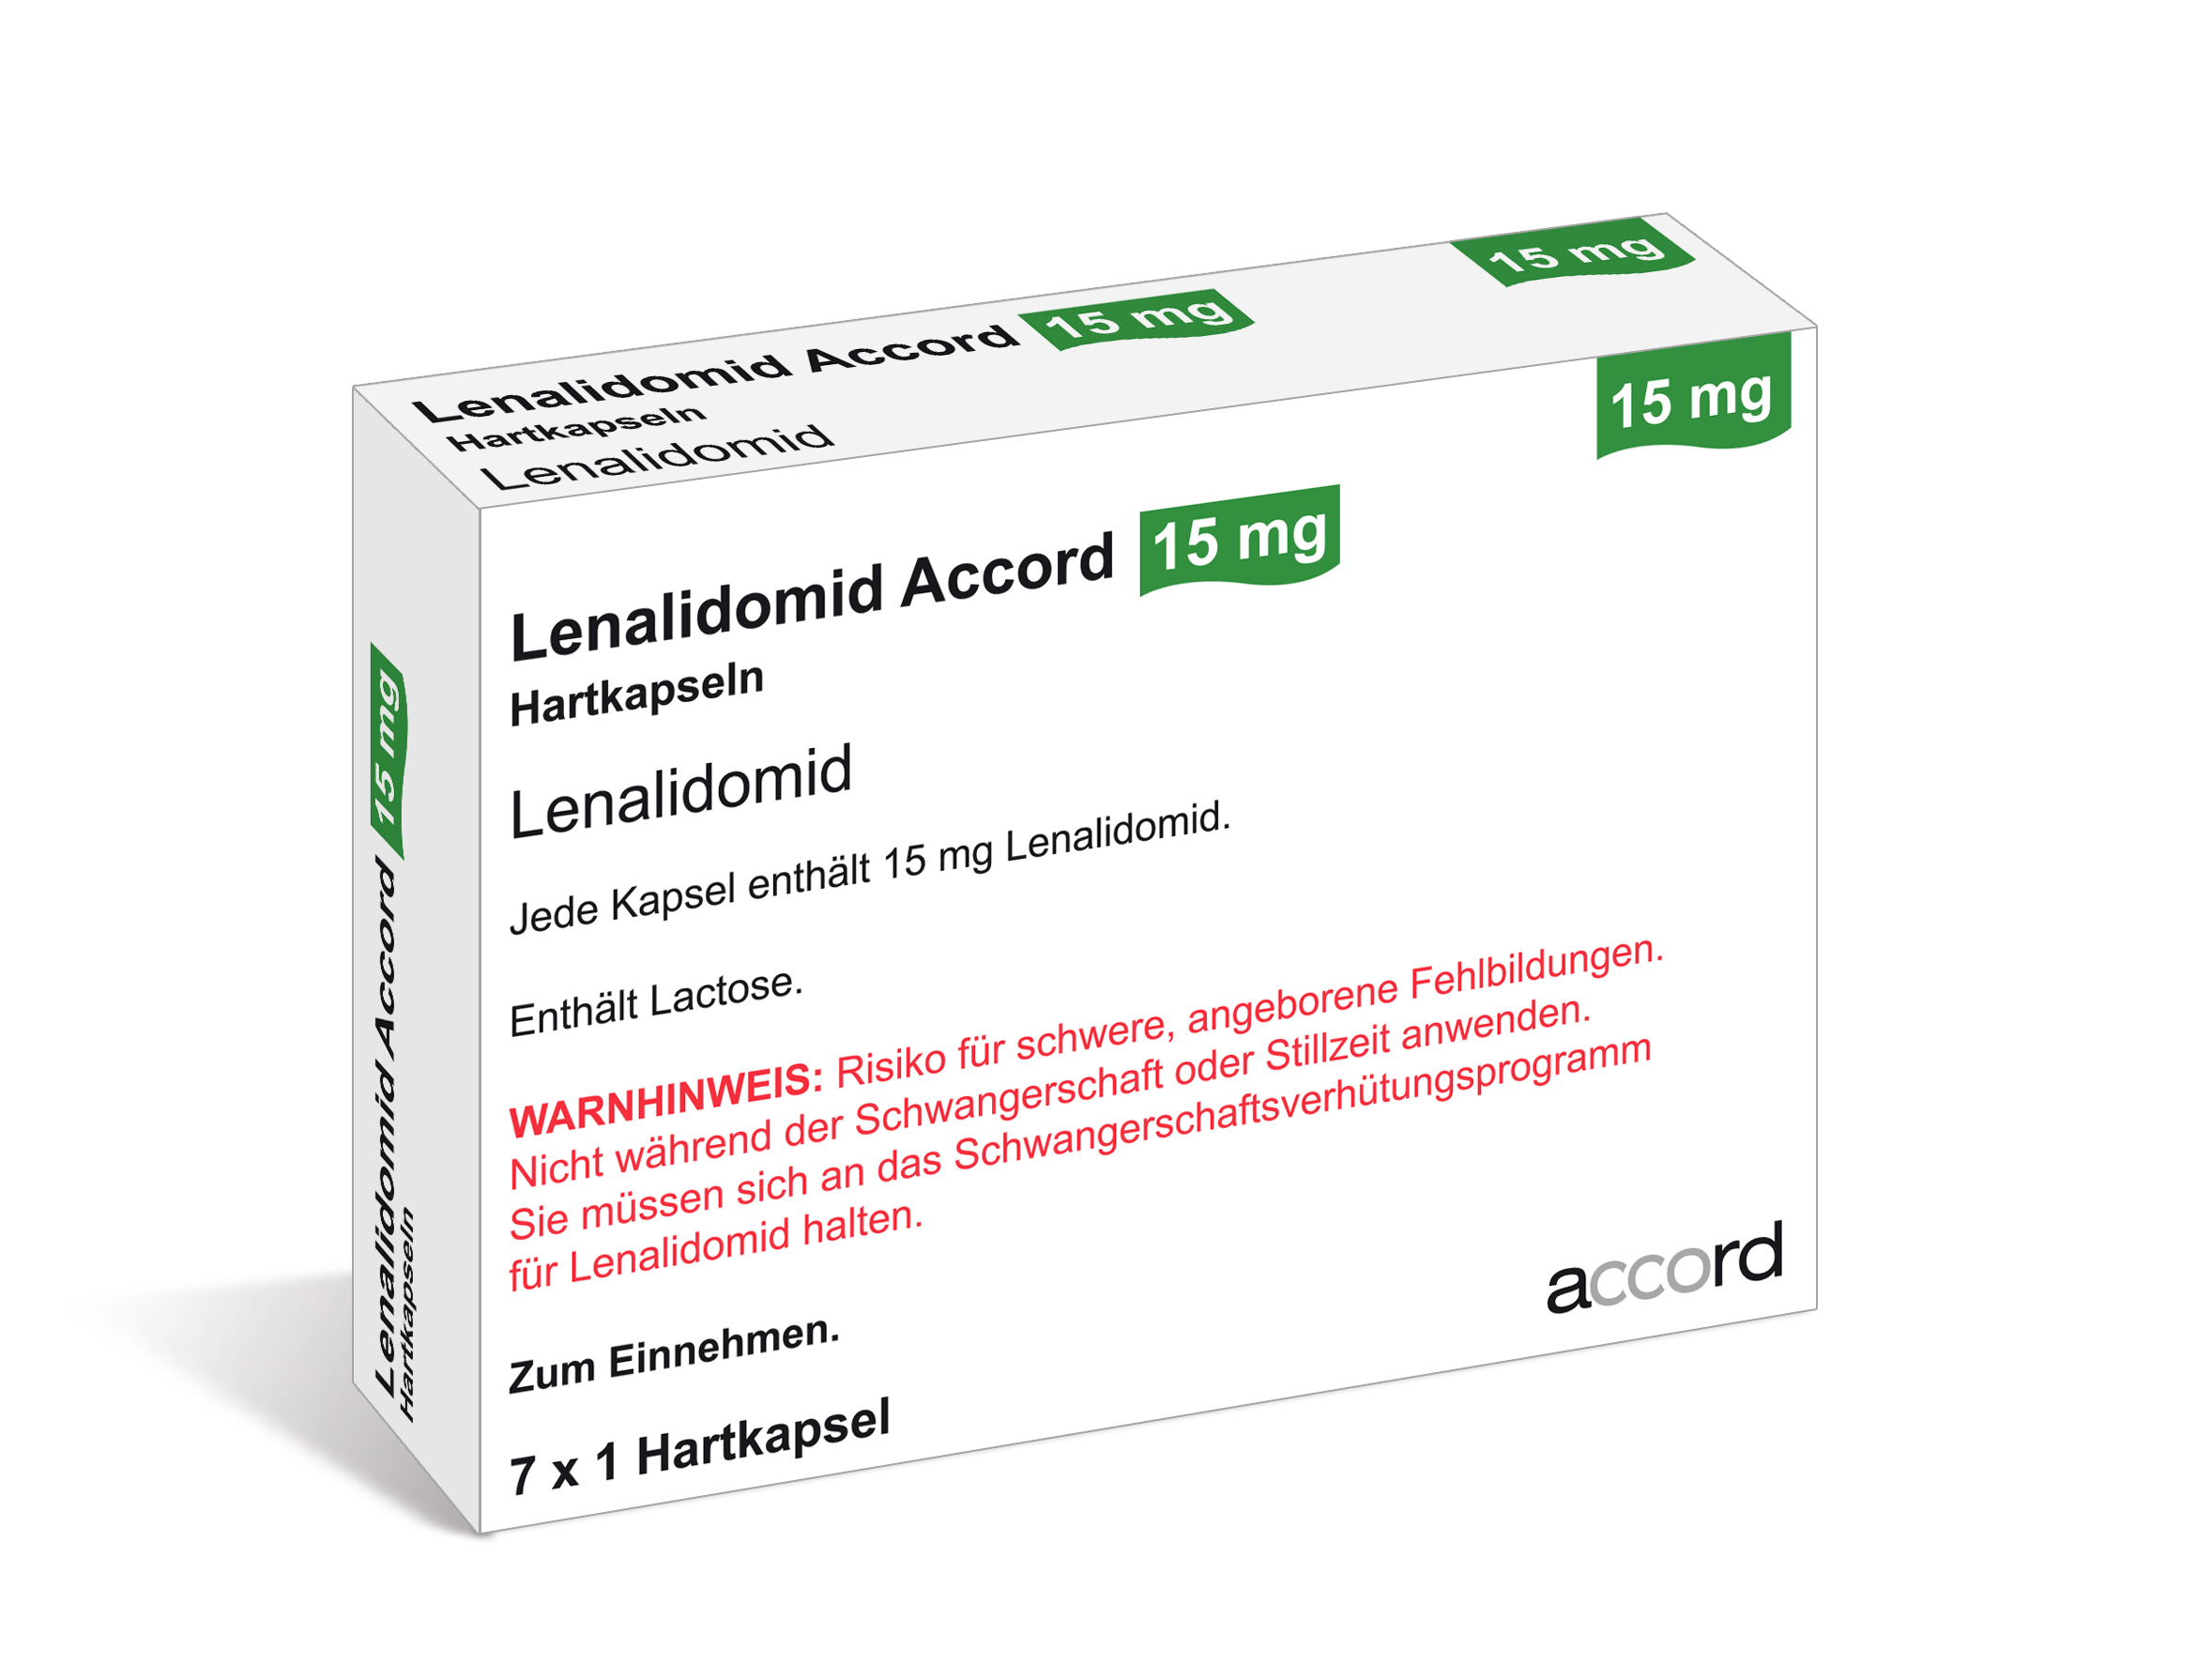 Accord Packshot Lenalidomid 15 mg